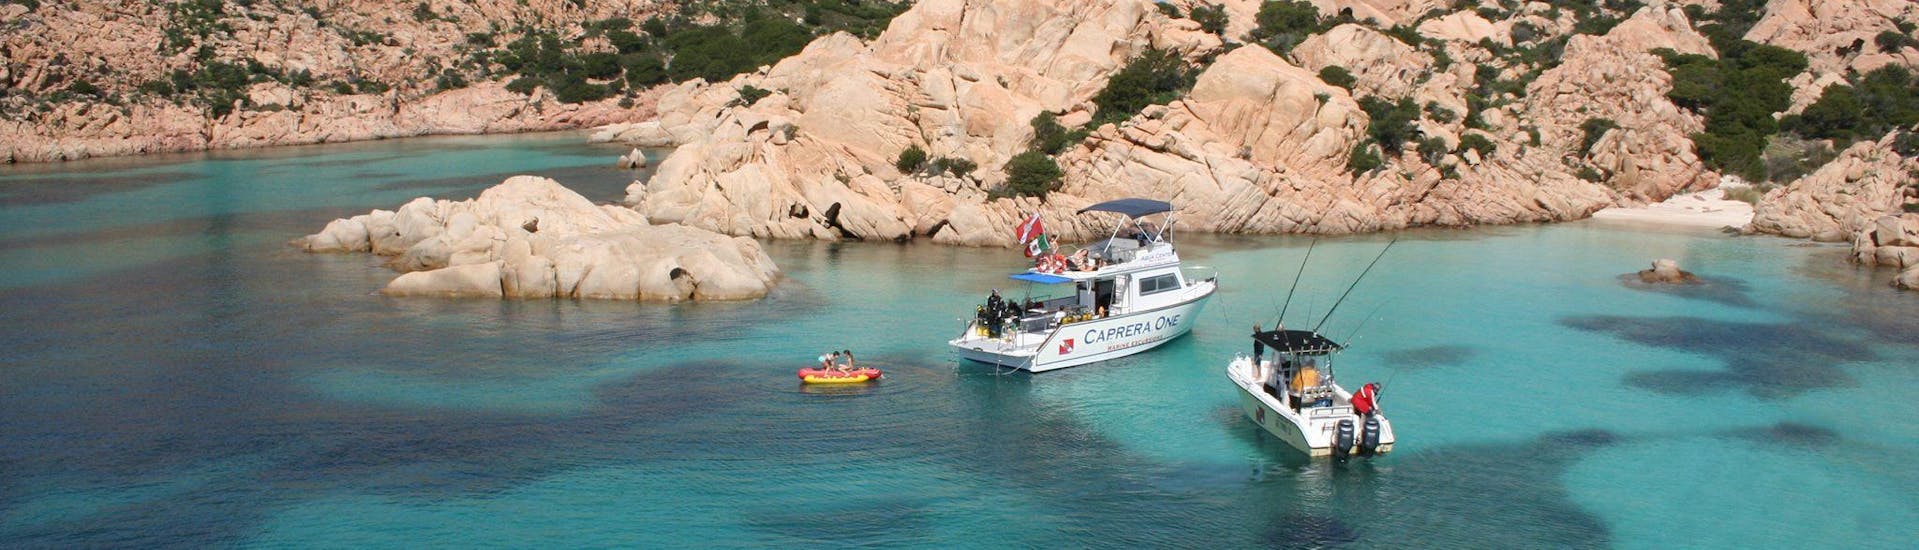 Bootstour zur Insel Caprera mit Schnorchelstopps.